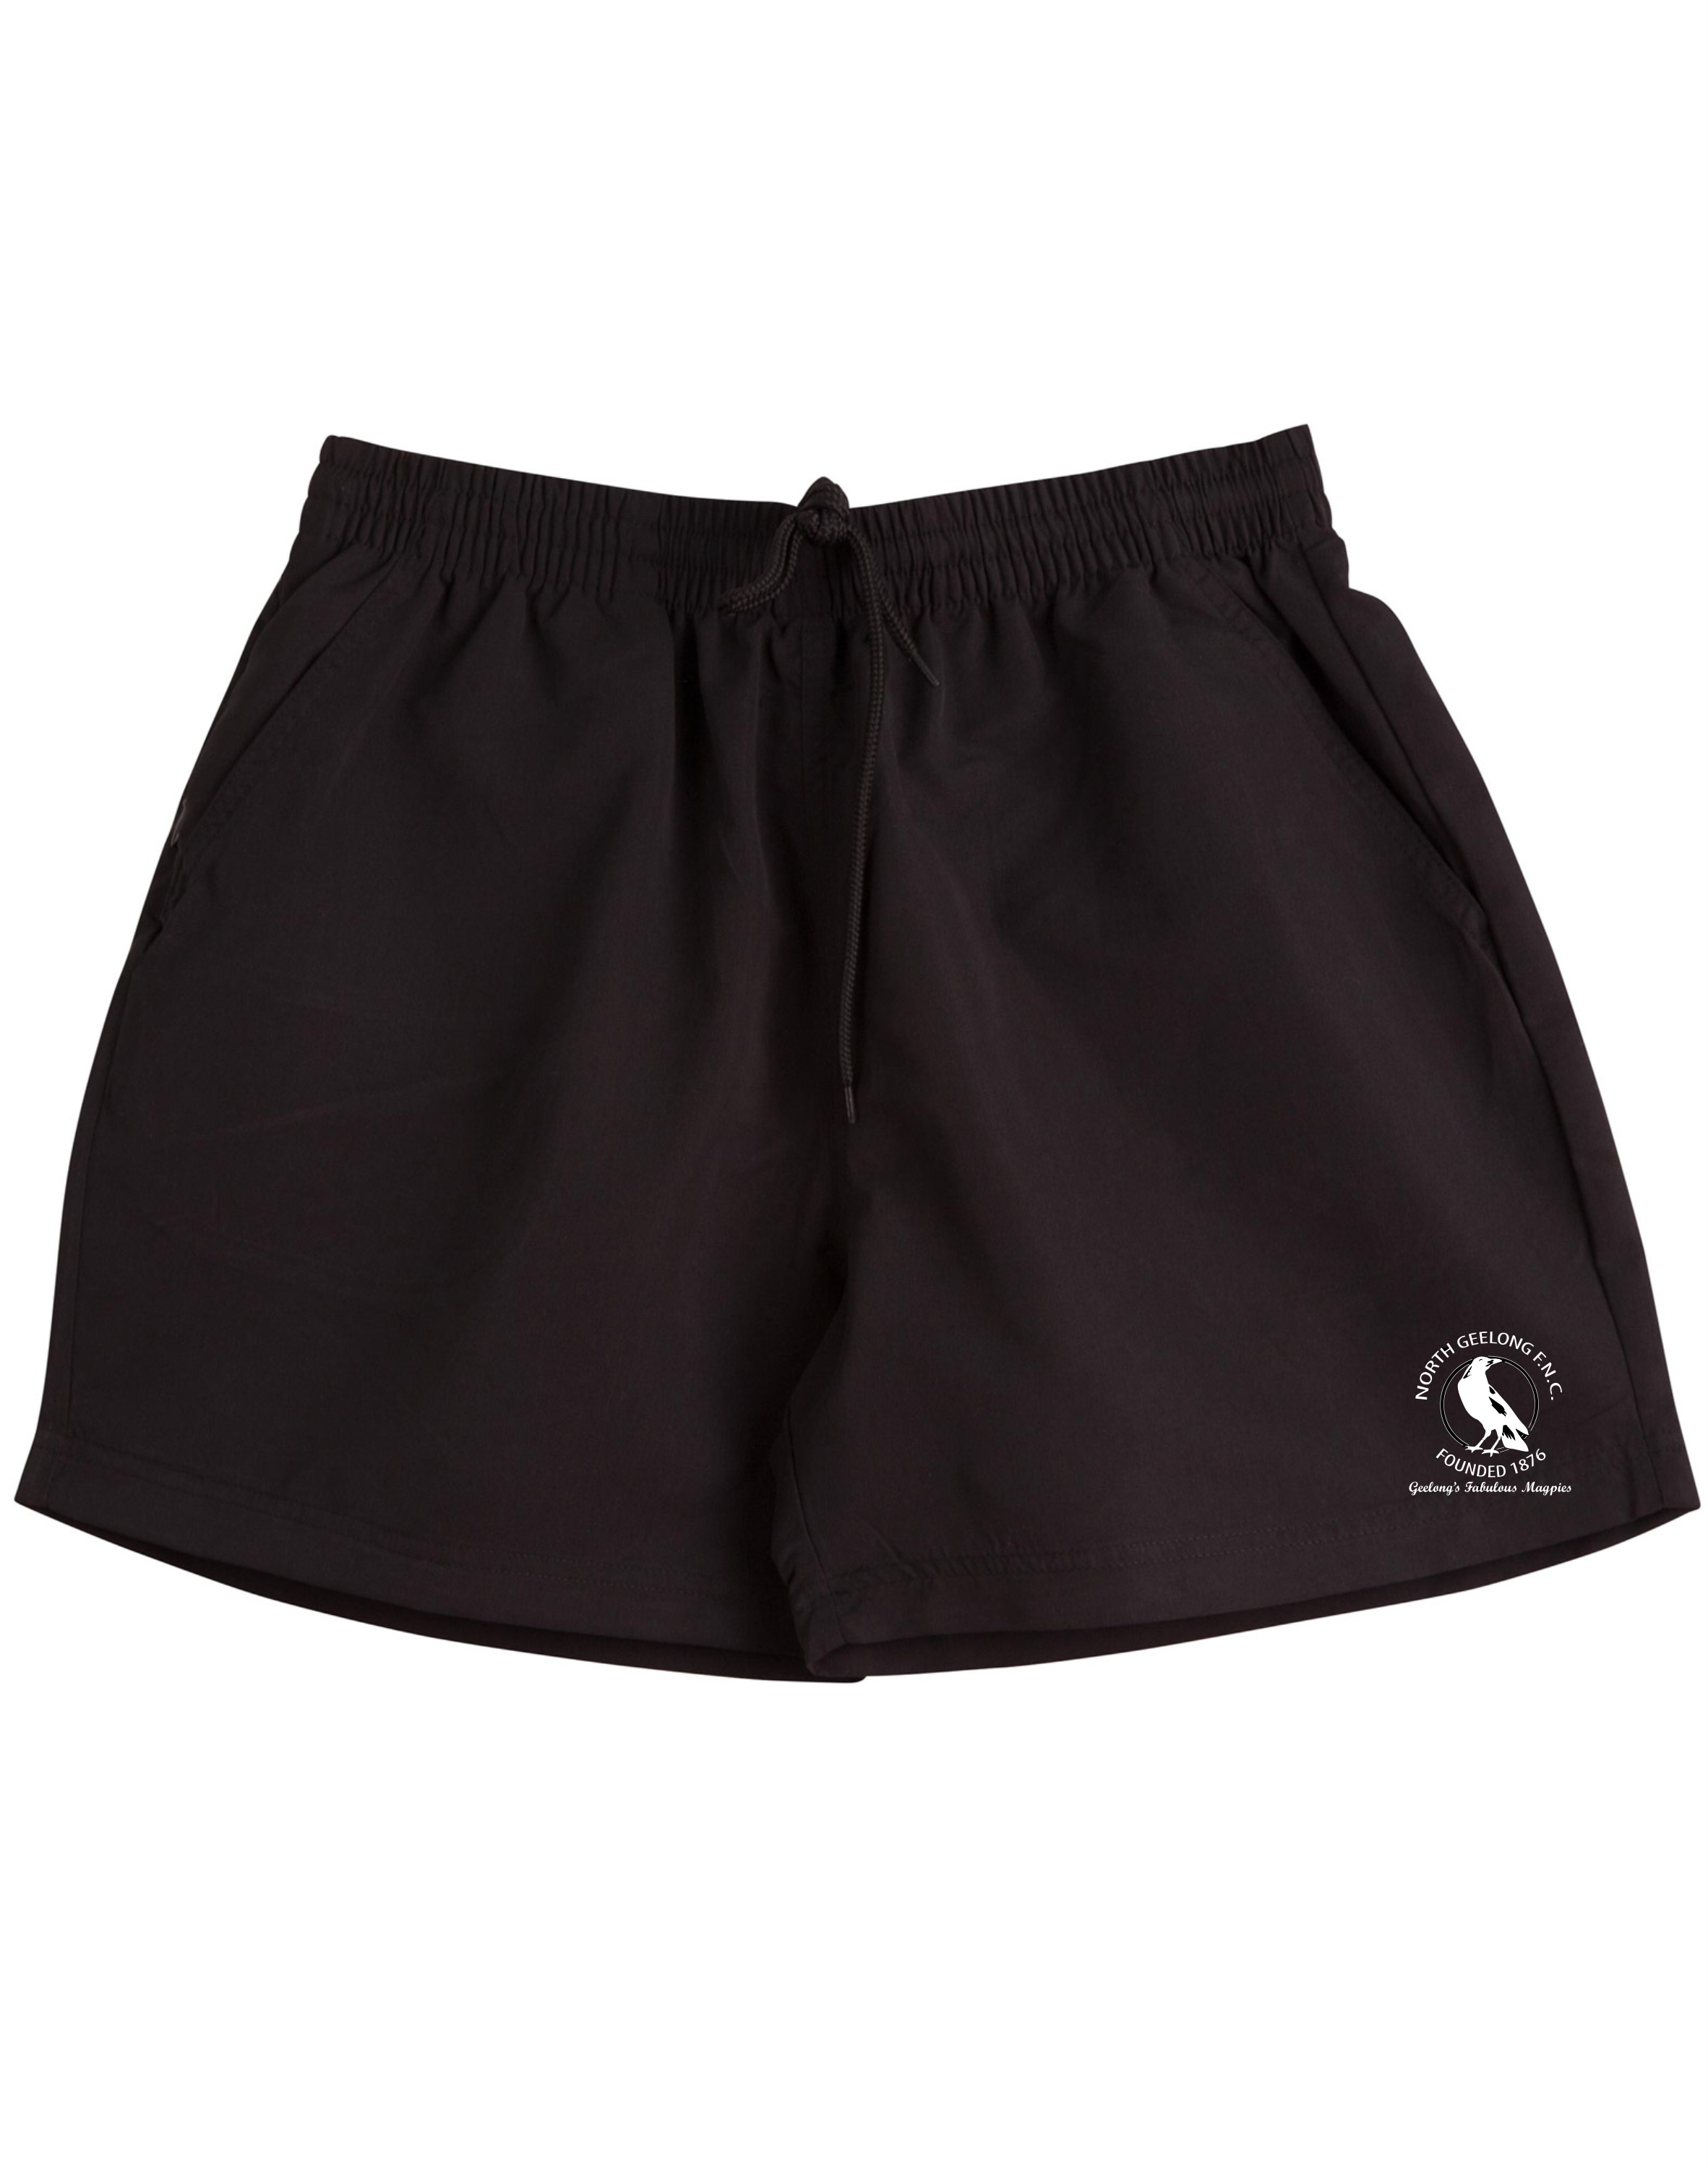 Unisex Black Sports Shorts